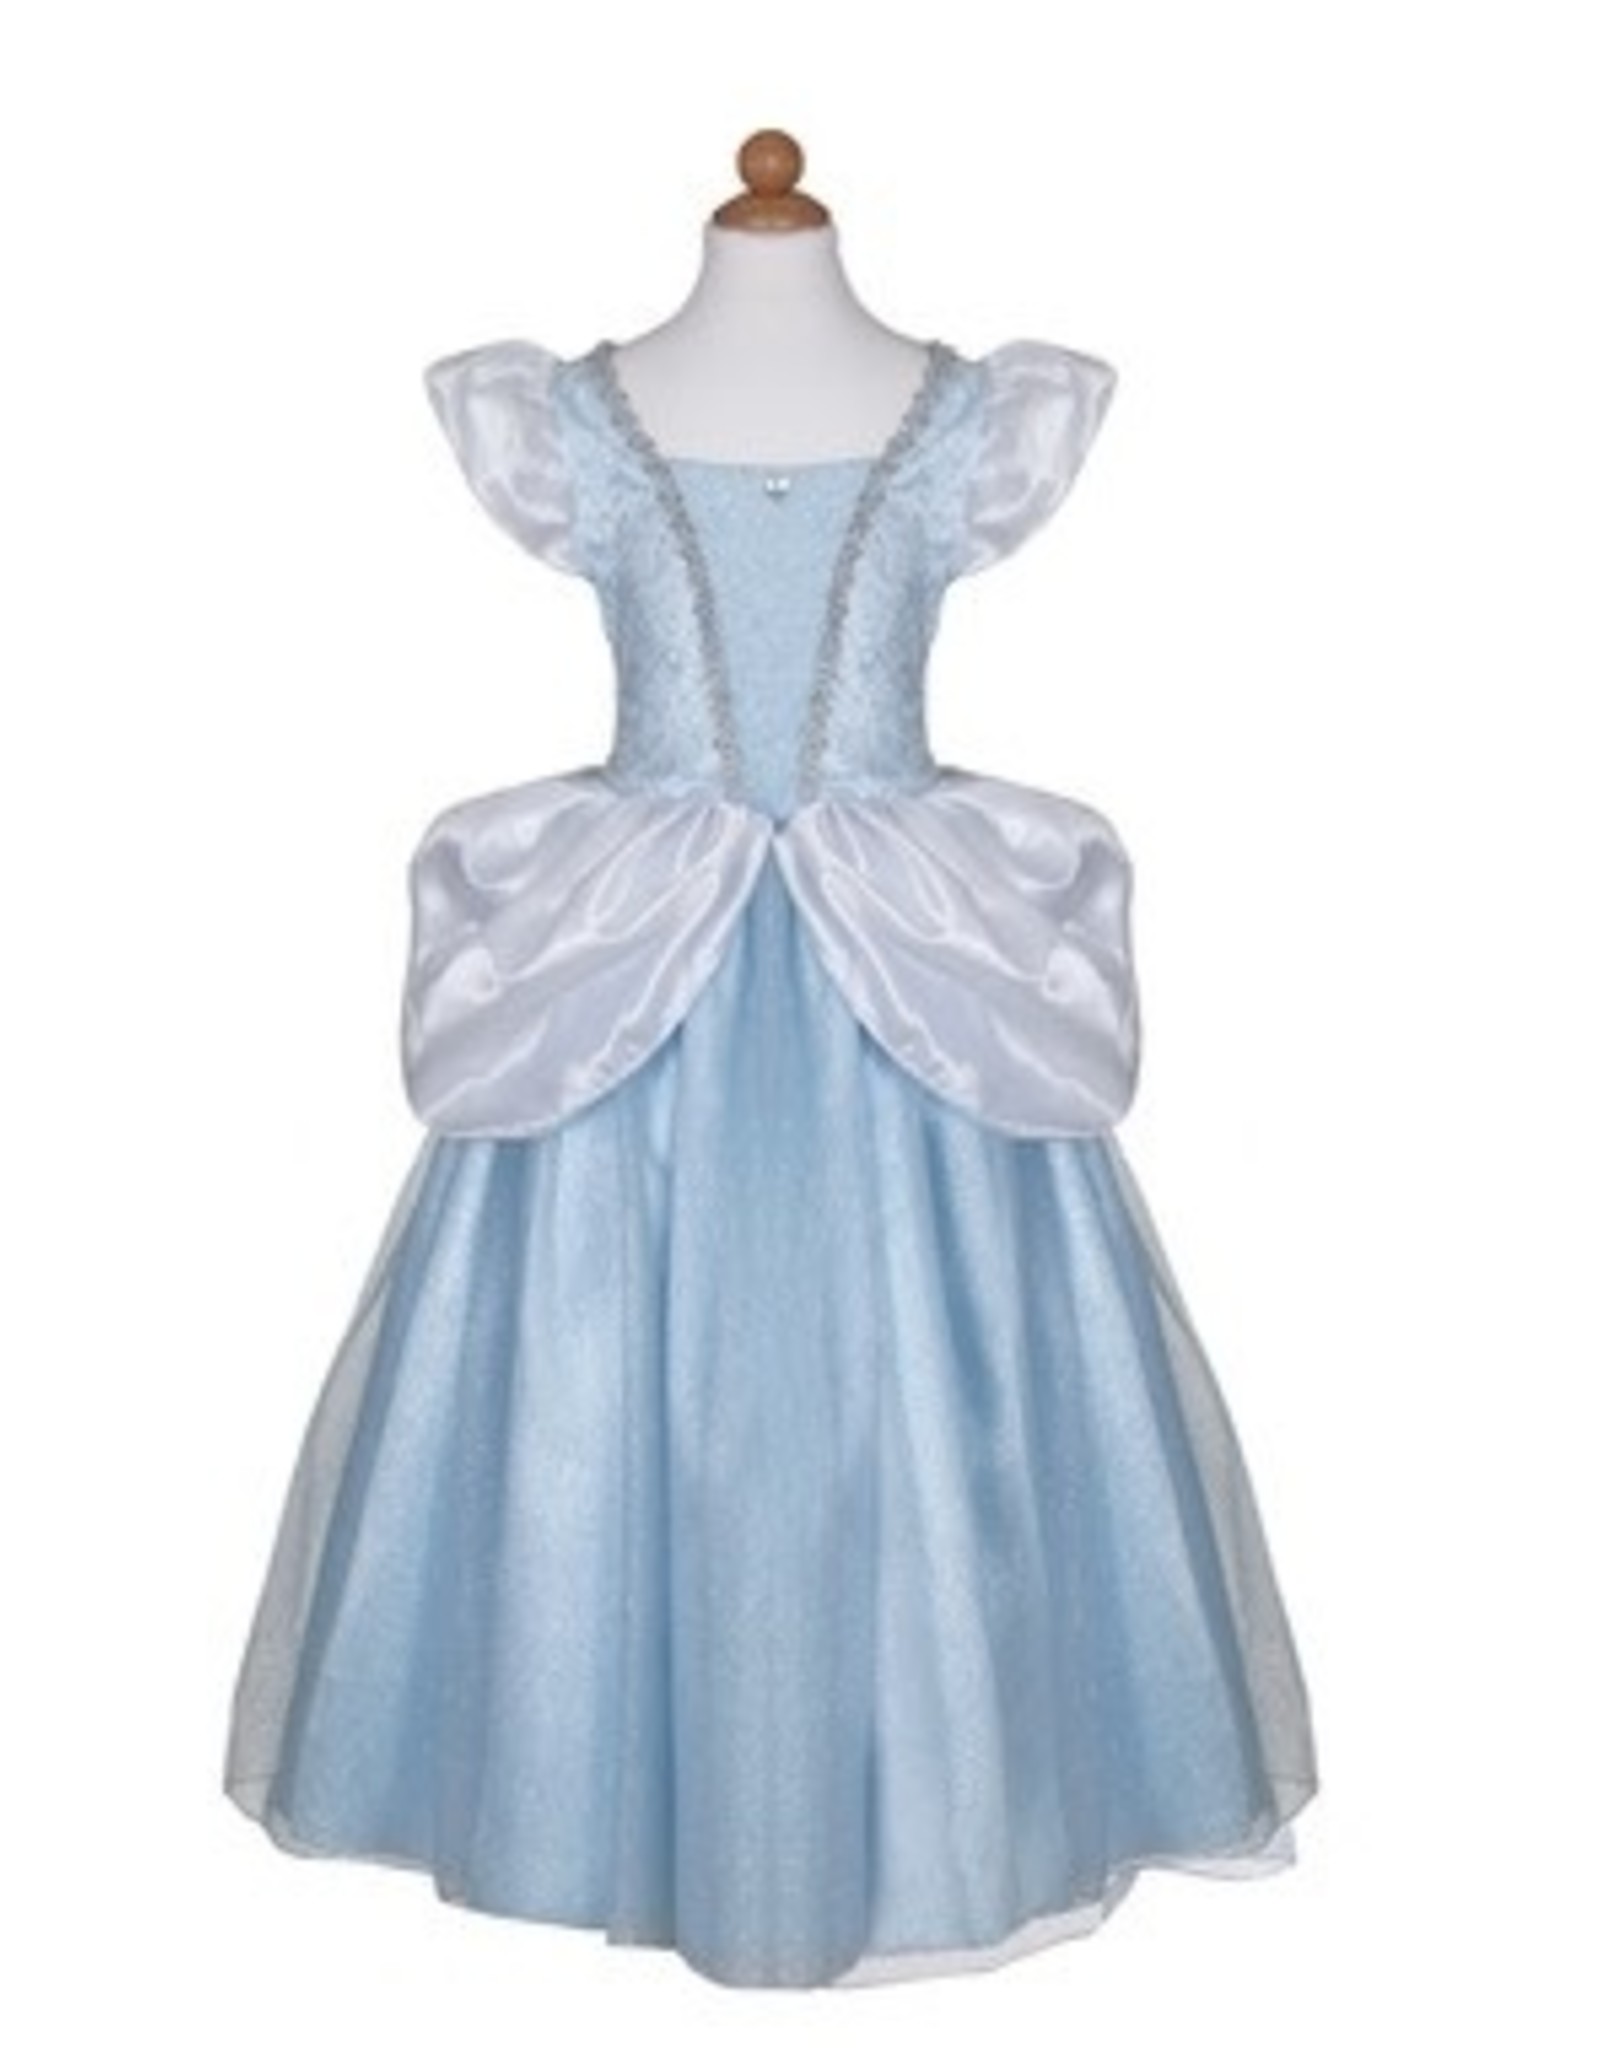 Great Pretenders Deluxe Cinderella Gown, Size 5-6